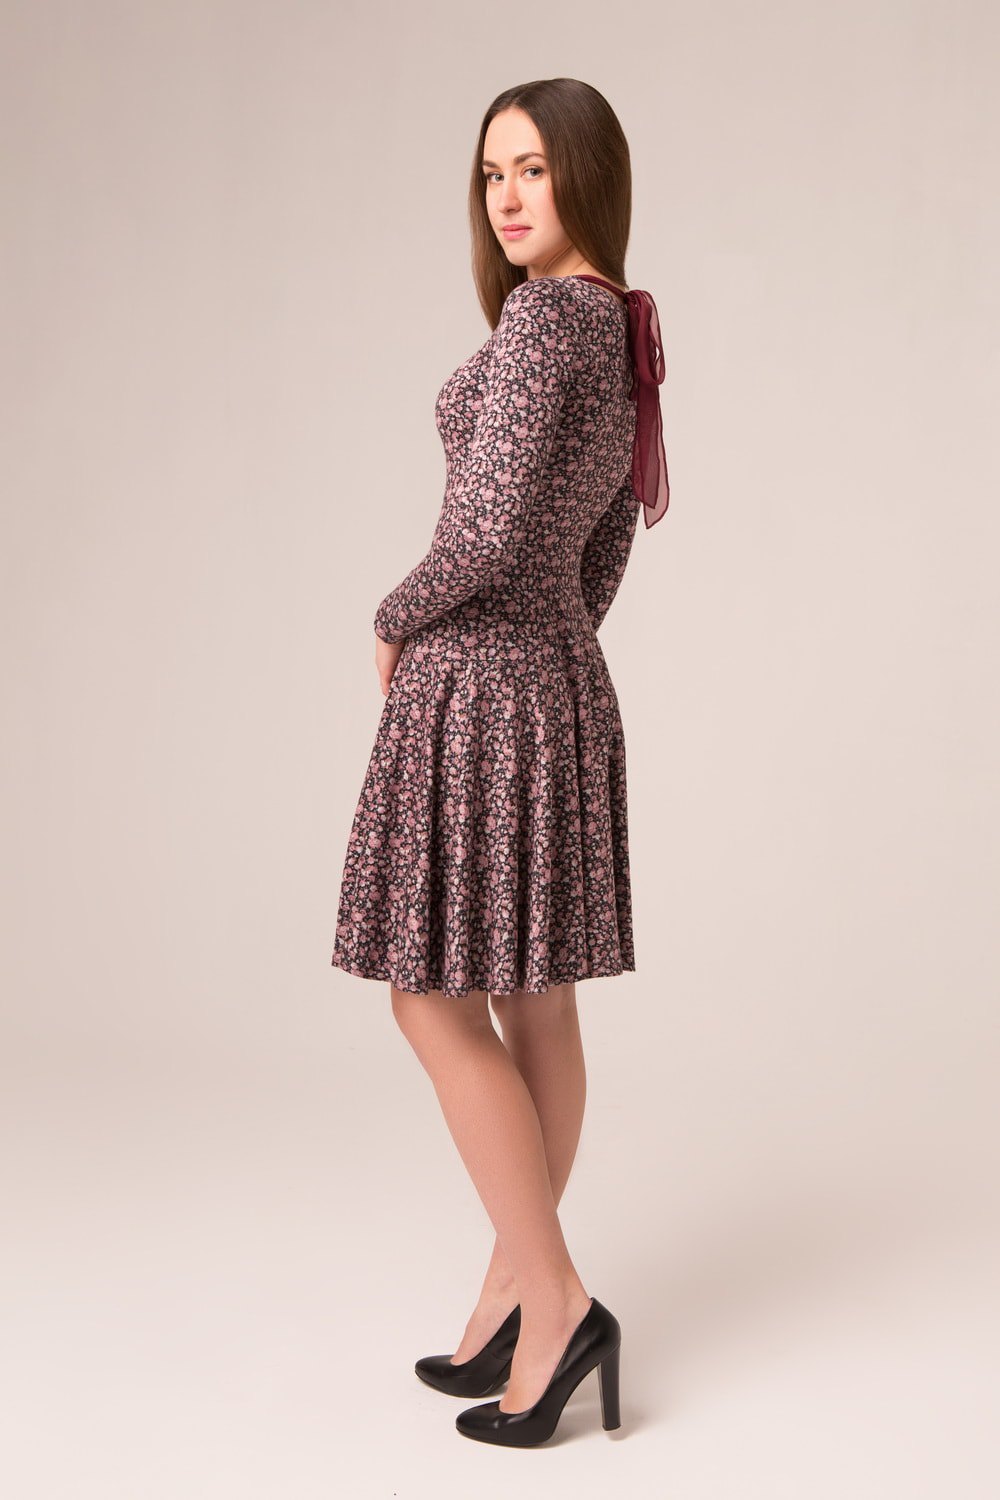 Платье женское "С бантиком" модель 615/3 розовые розочки